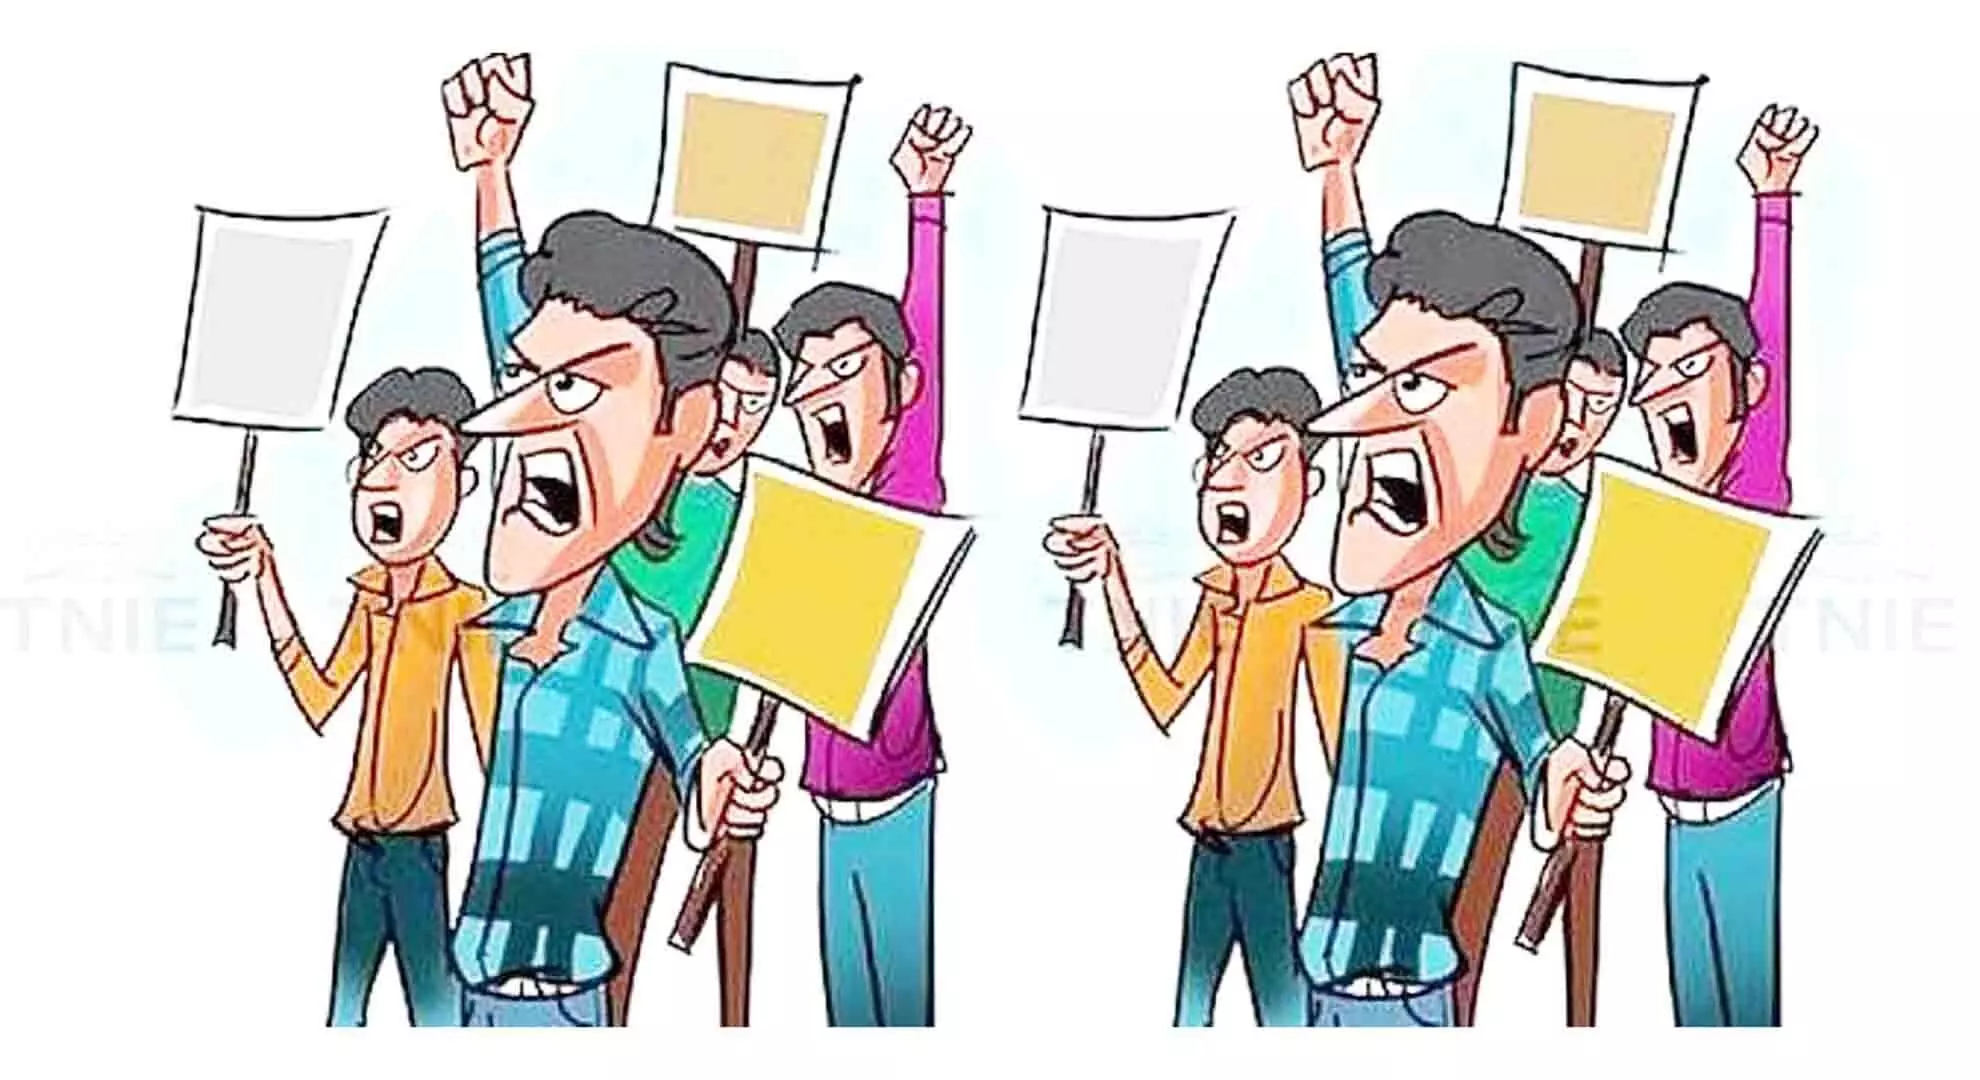 पेरियार विश्वविद्यालय के कर्मचारियों ने वीसी के खिलाफ कार्रवाई की मांग की; धरना दो